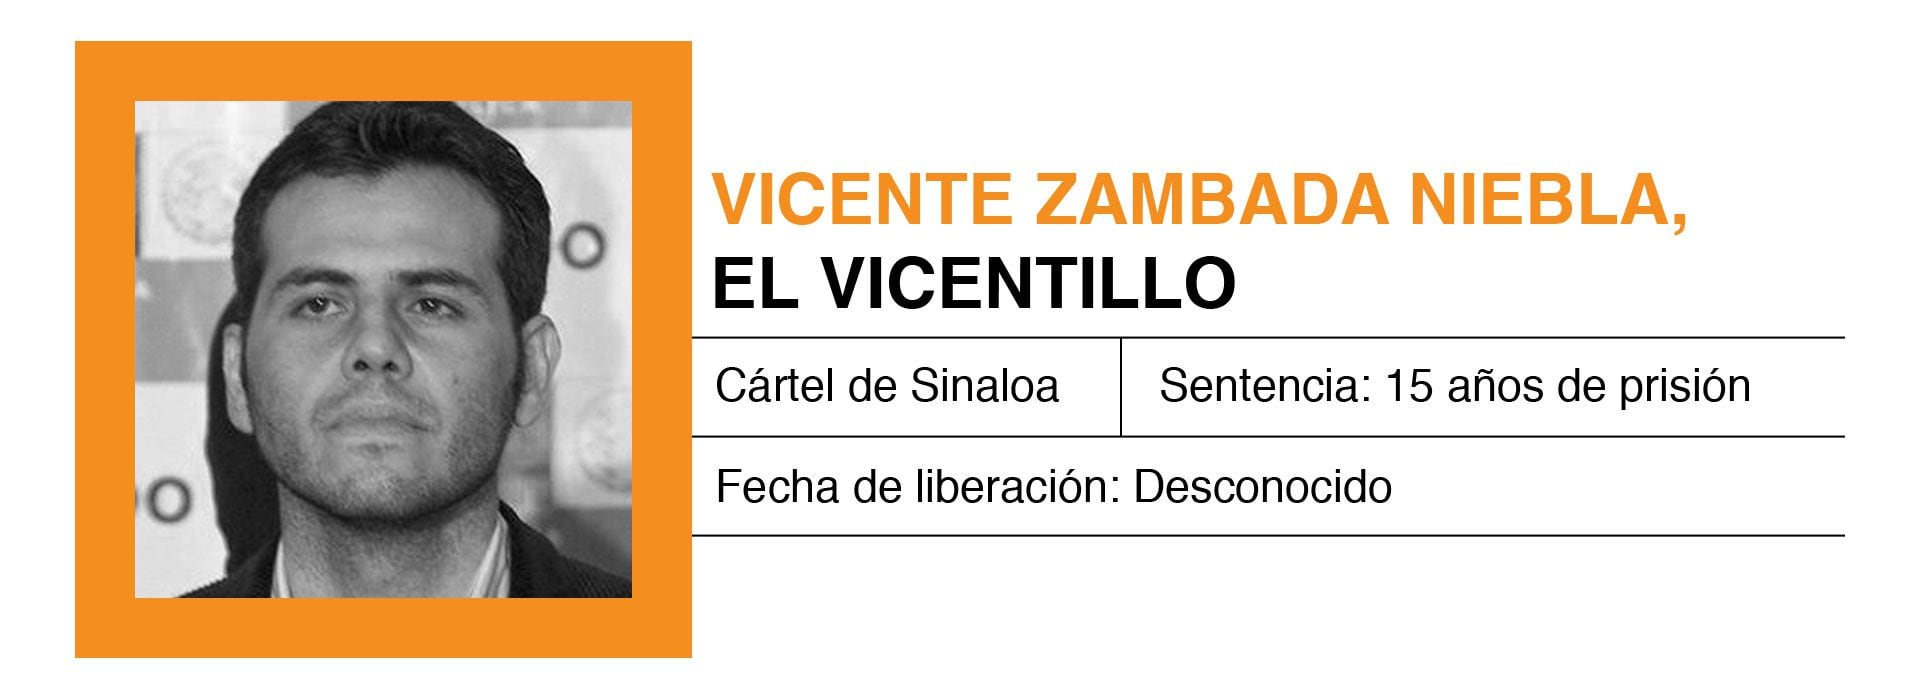 'El Vicentillo' fue sentenciado a 15 años de prisión luego de cooperar con las autoridades de EEUU (Foto: Infobae México)